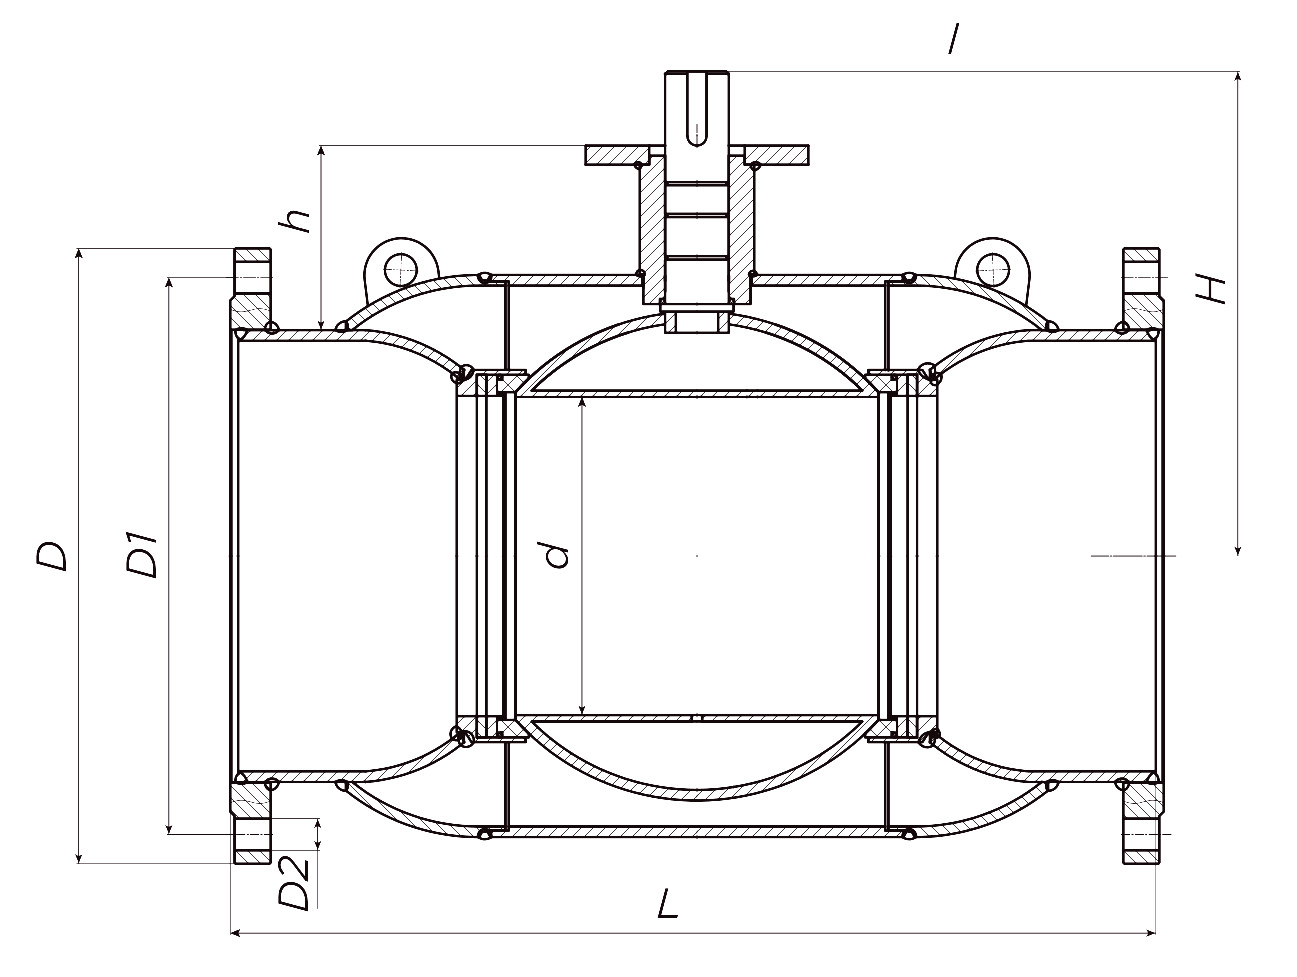 Кран шаровой ALSO КШ.Ф.Р.400.25-01 Ду400 Ру25 стандартнопроходной, присоединение - фланцевое, корпус - сталь 20, уплотнение - PTFE, под редуктор/привод